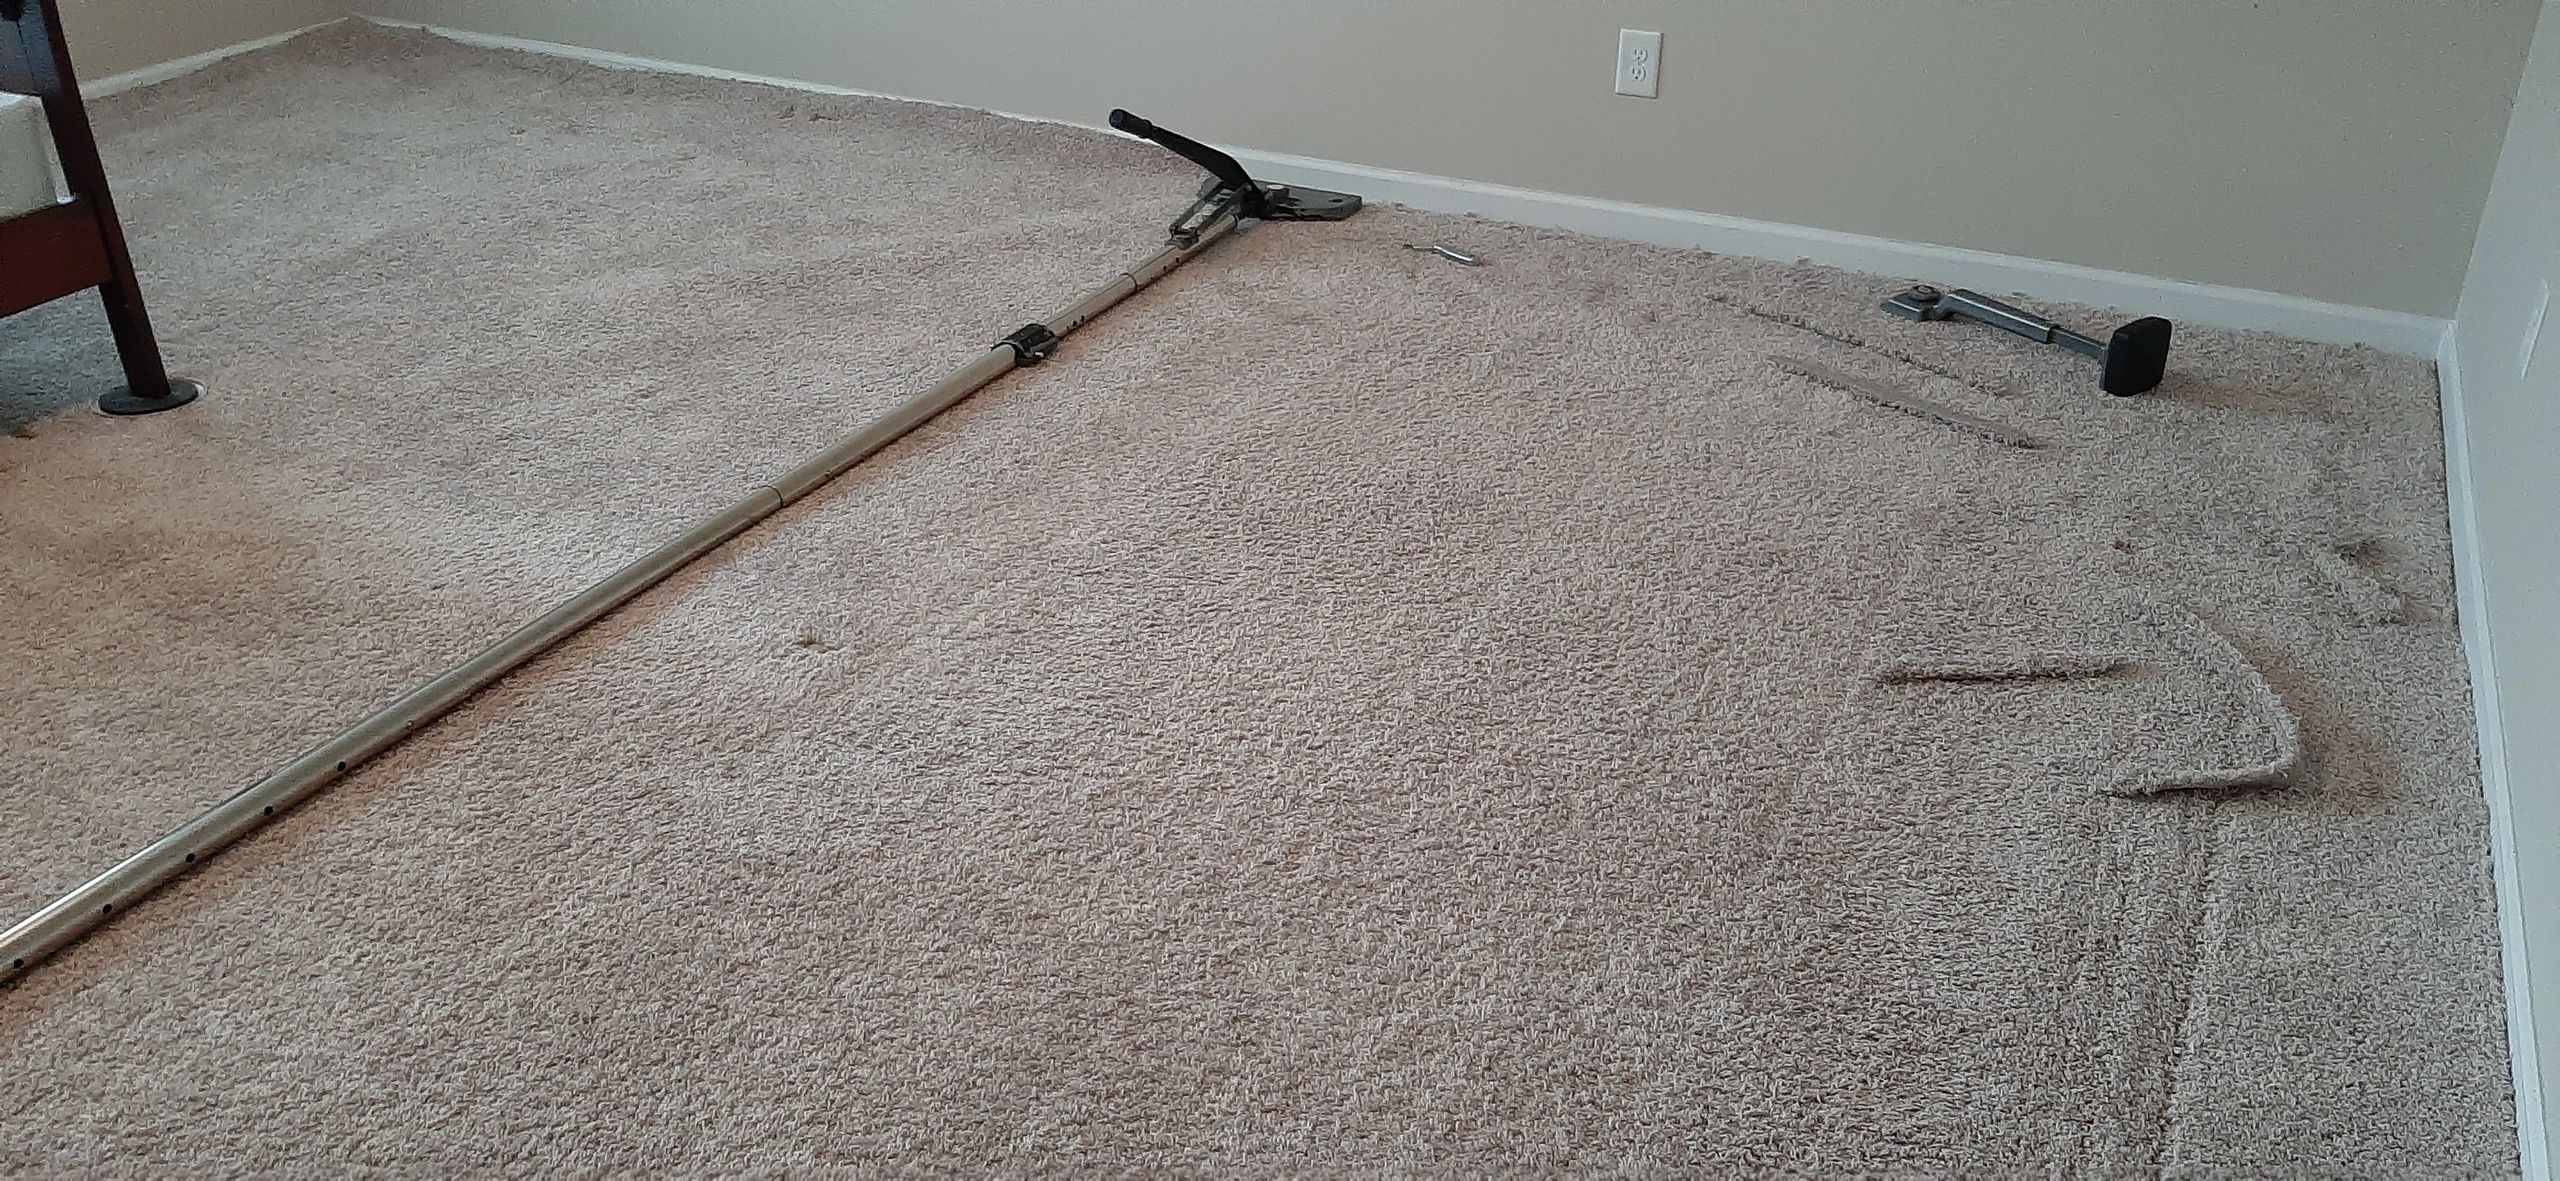 Carpet Repairs Philadelphia, PA Carpet Stretching, Patching, Seams